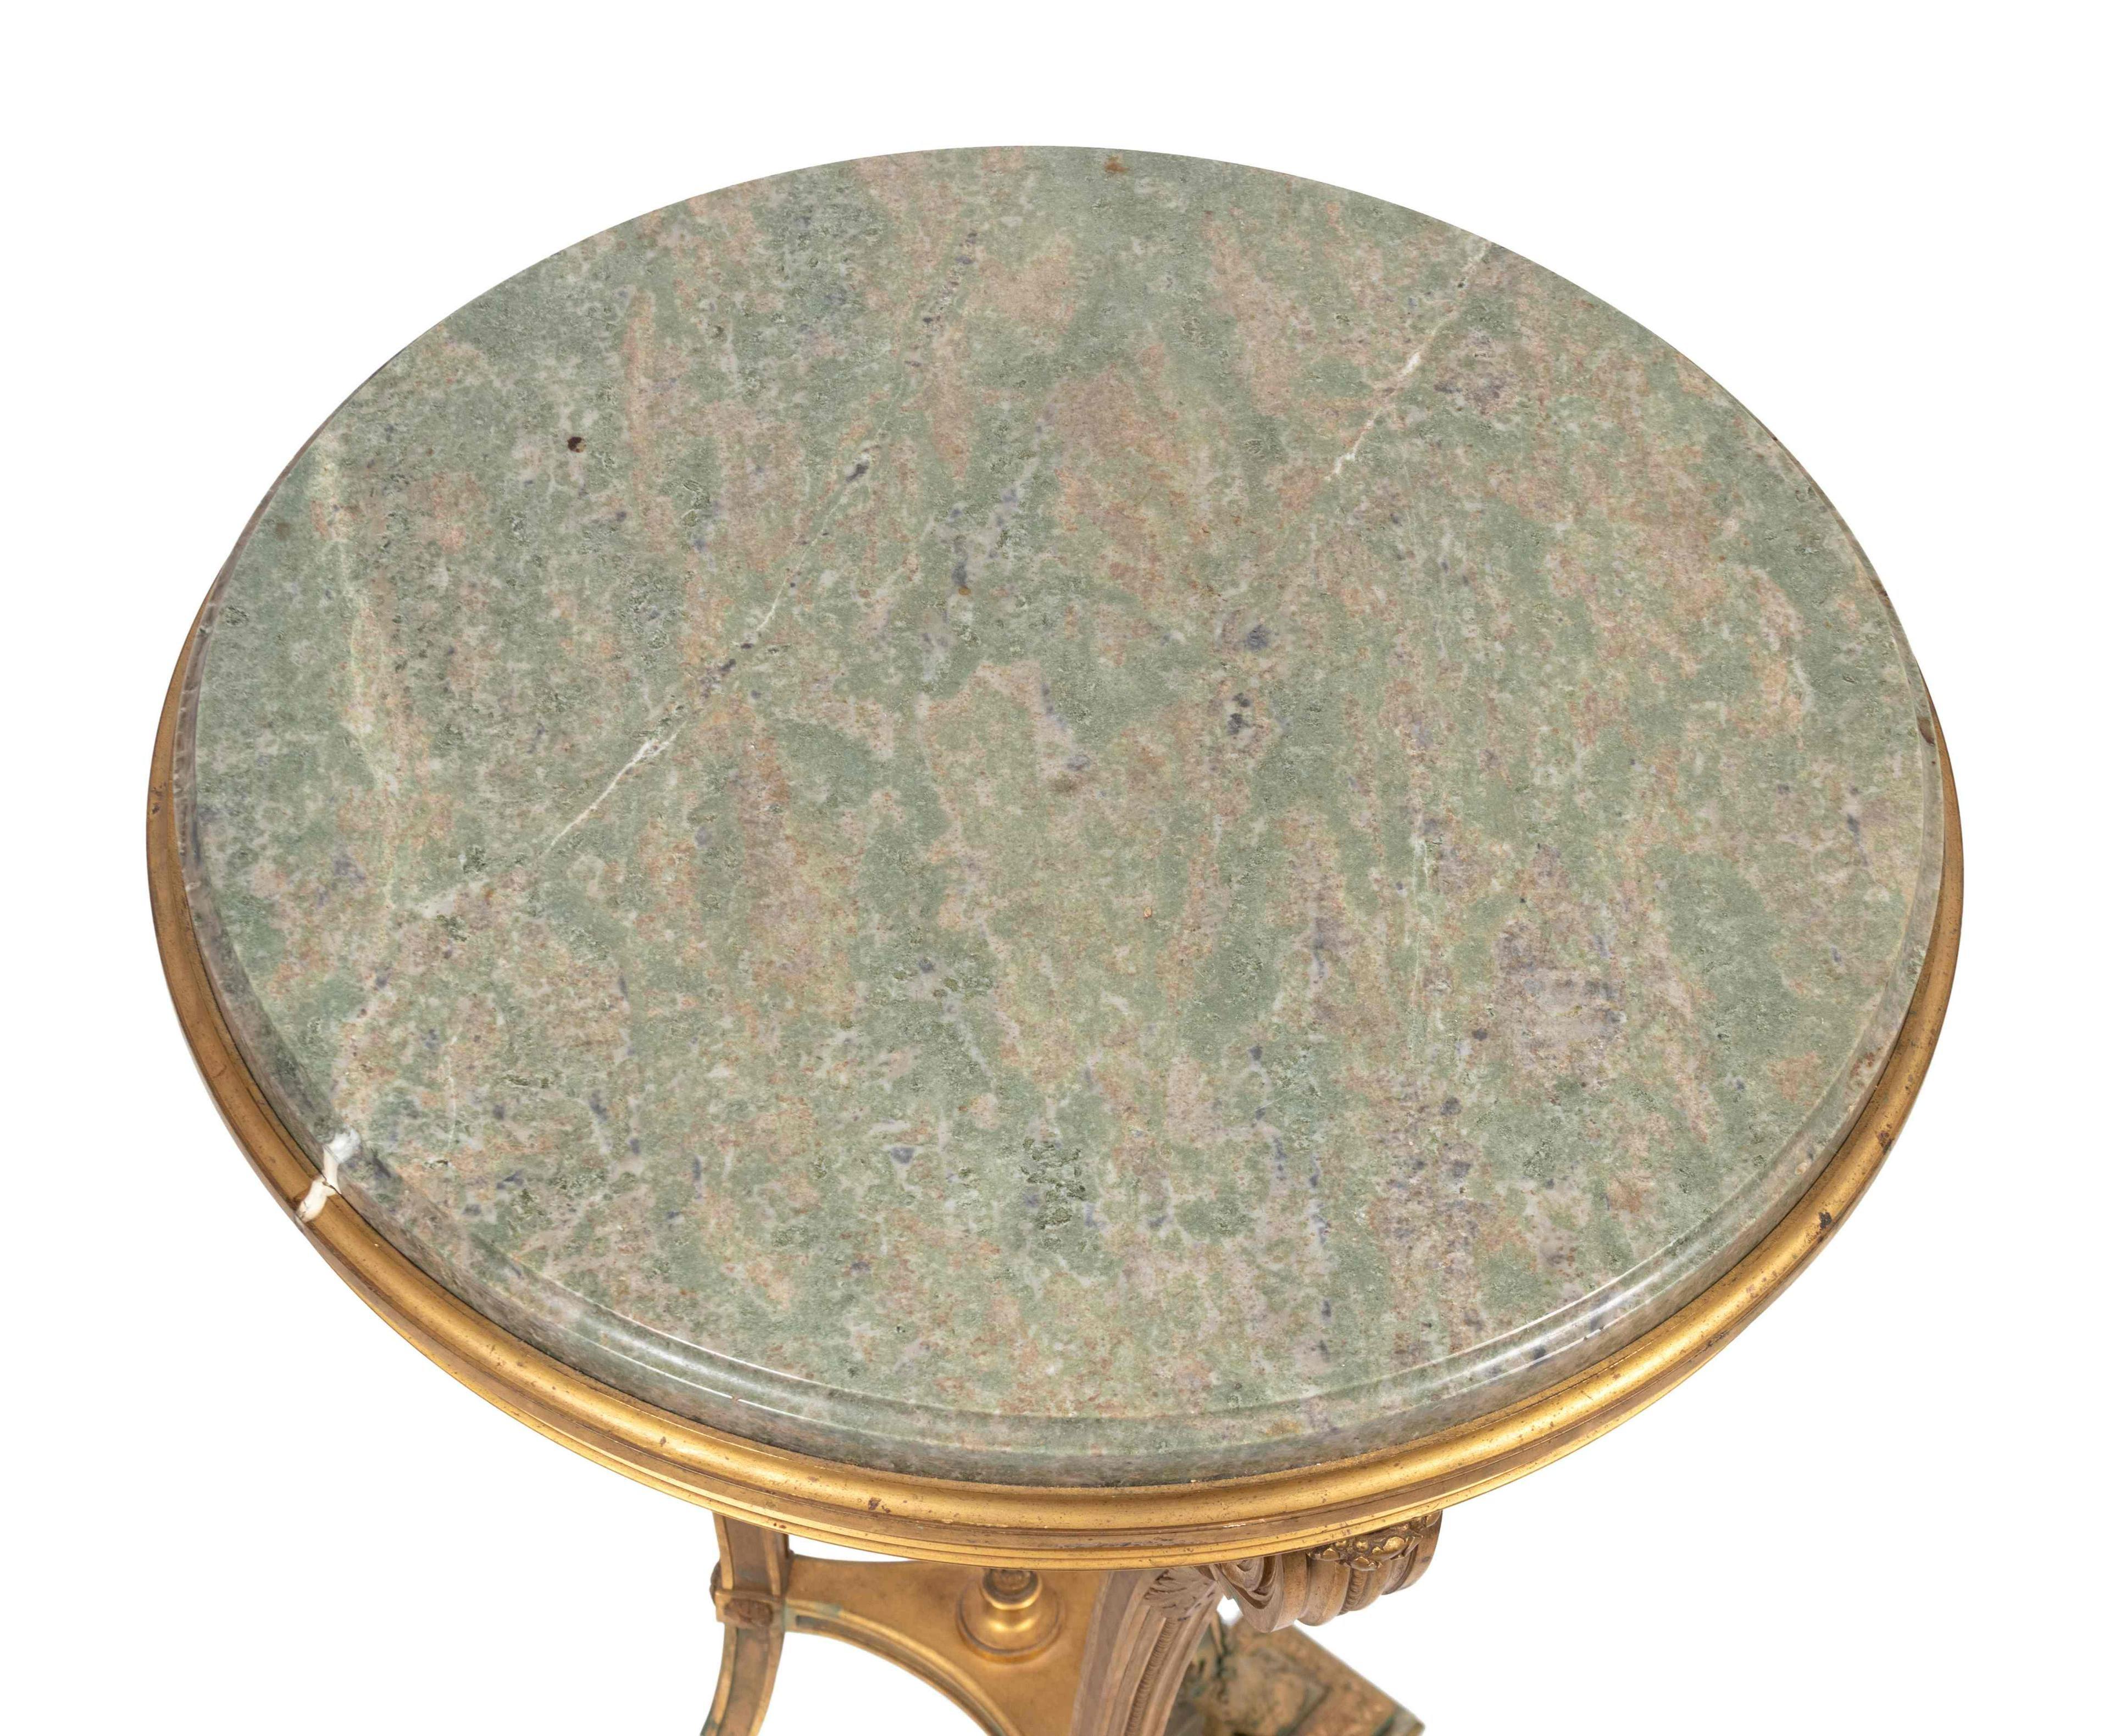 Ein prächtiges Guéridon aus vergoldeter Bronze und Marmor im Stil Ludwigs XVI. von Victor Raulin, Frankreich, um 1880.
Signatur auf hölzernem, rundem Träger unter der Marmorplatte.
Abmessungen: Höhe 32 1/2